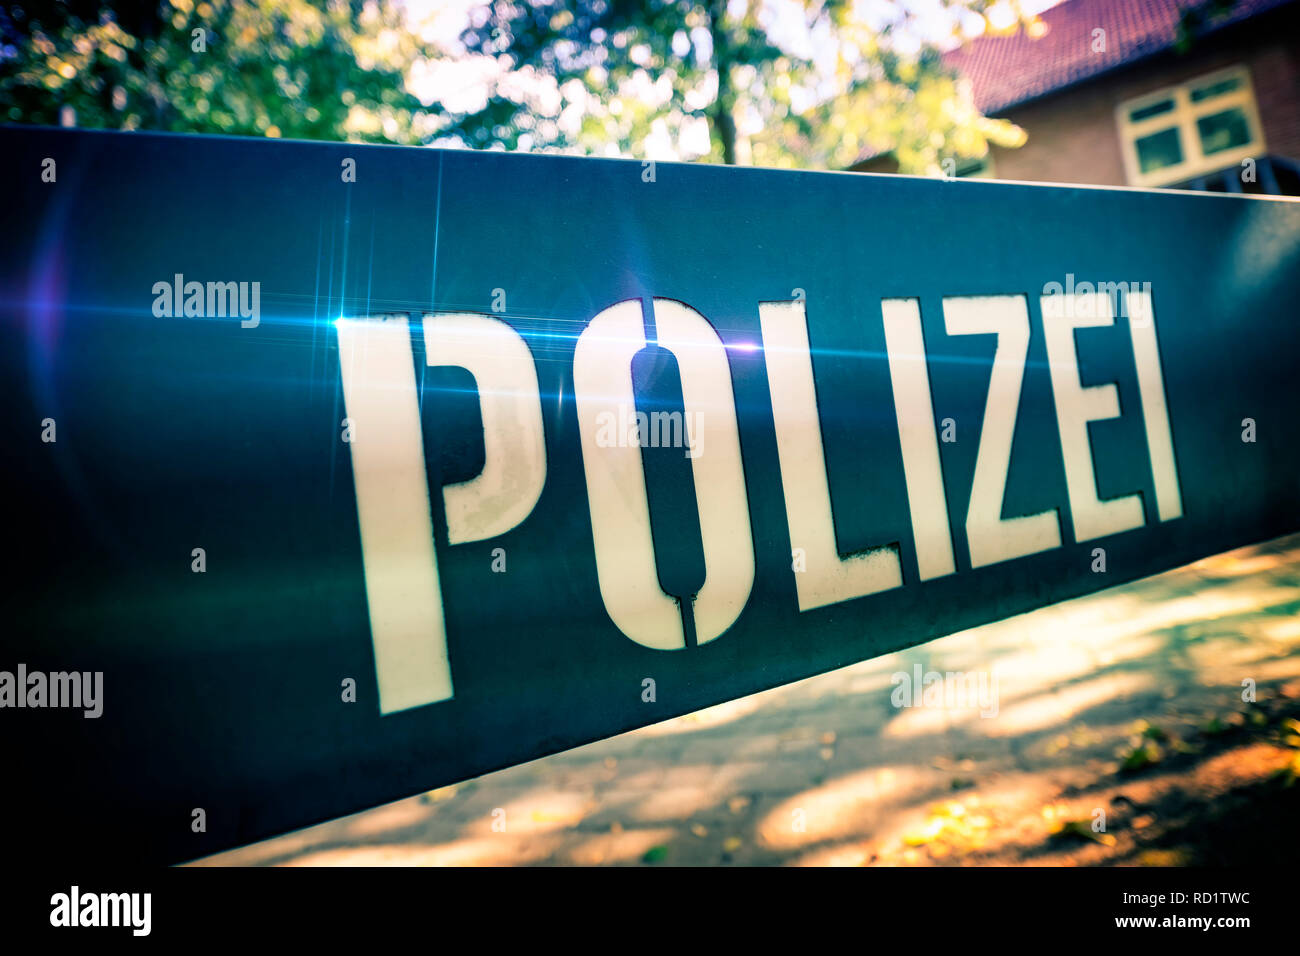 Police sign, Polizeischild Stock Photo